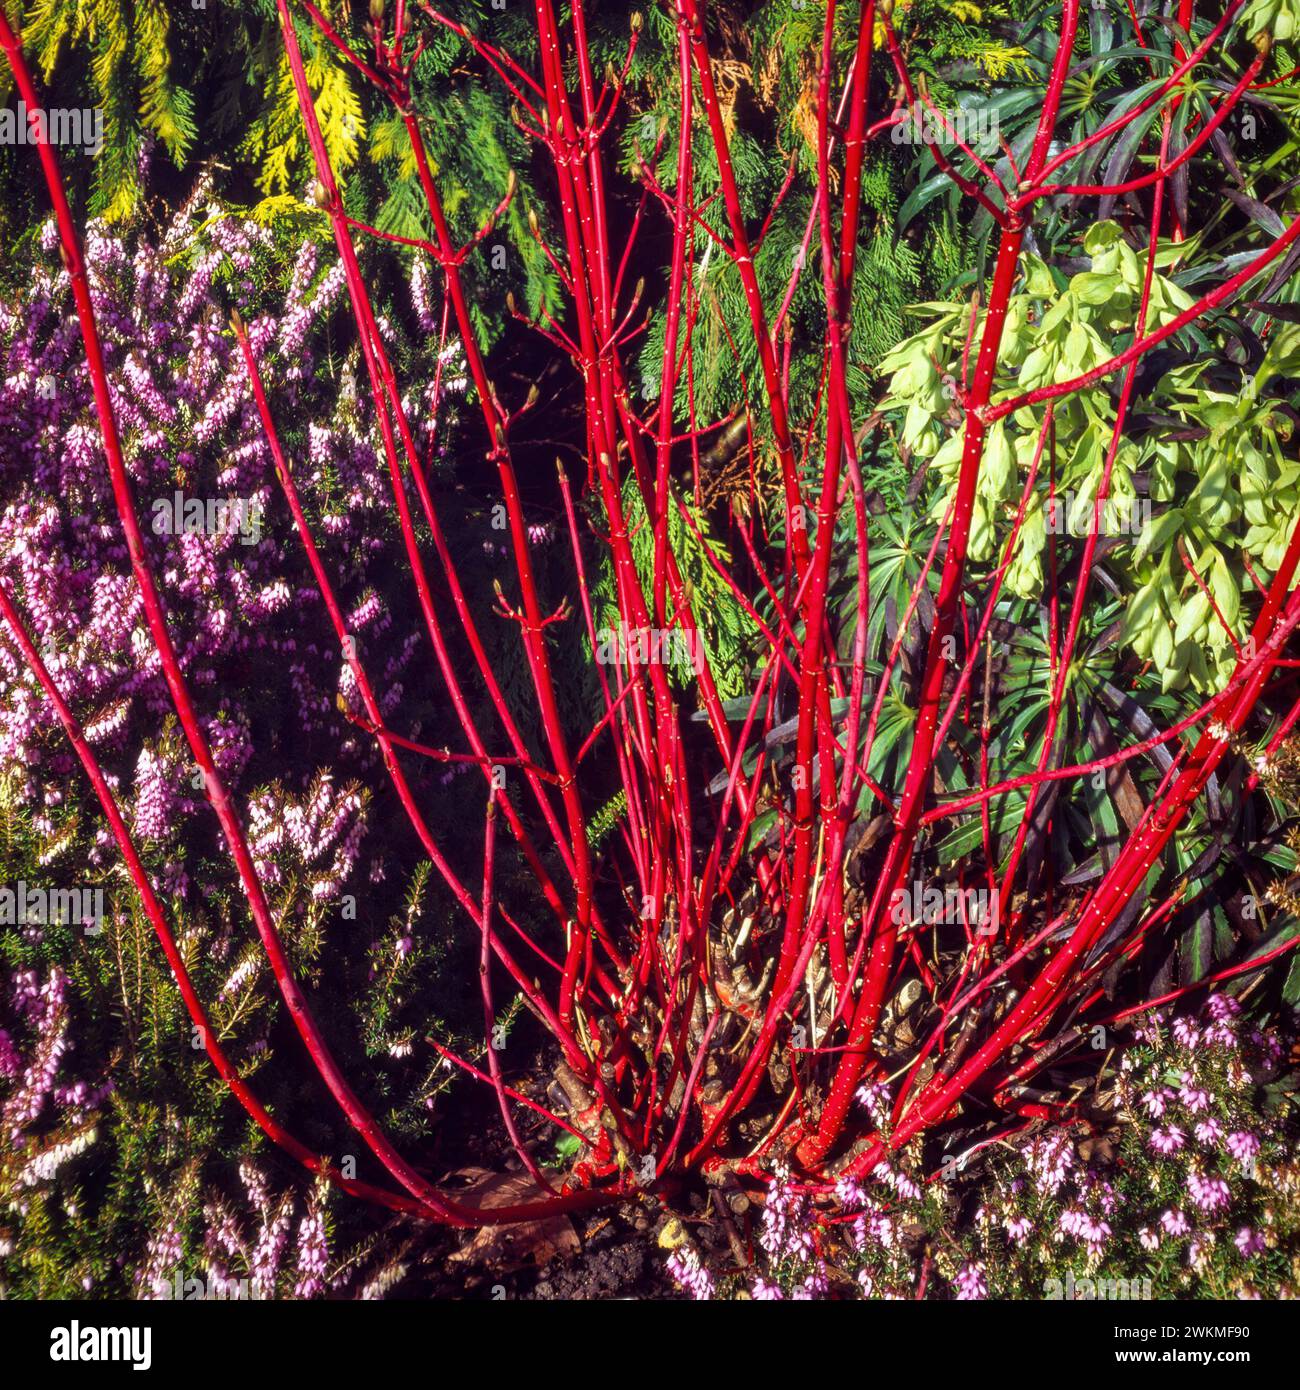 Leuchtend rote Stiele von Dogwood Cornus alba „Siberica“ mit Erica x darleyensis „Furzey“ Heidekraut, die in englischer Gartengrenze, England, Vereinigtes Königreich, wachsen Stockfoto